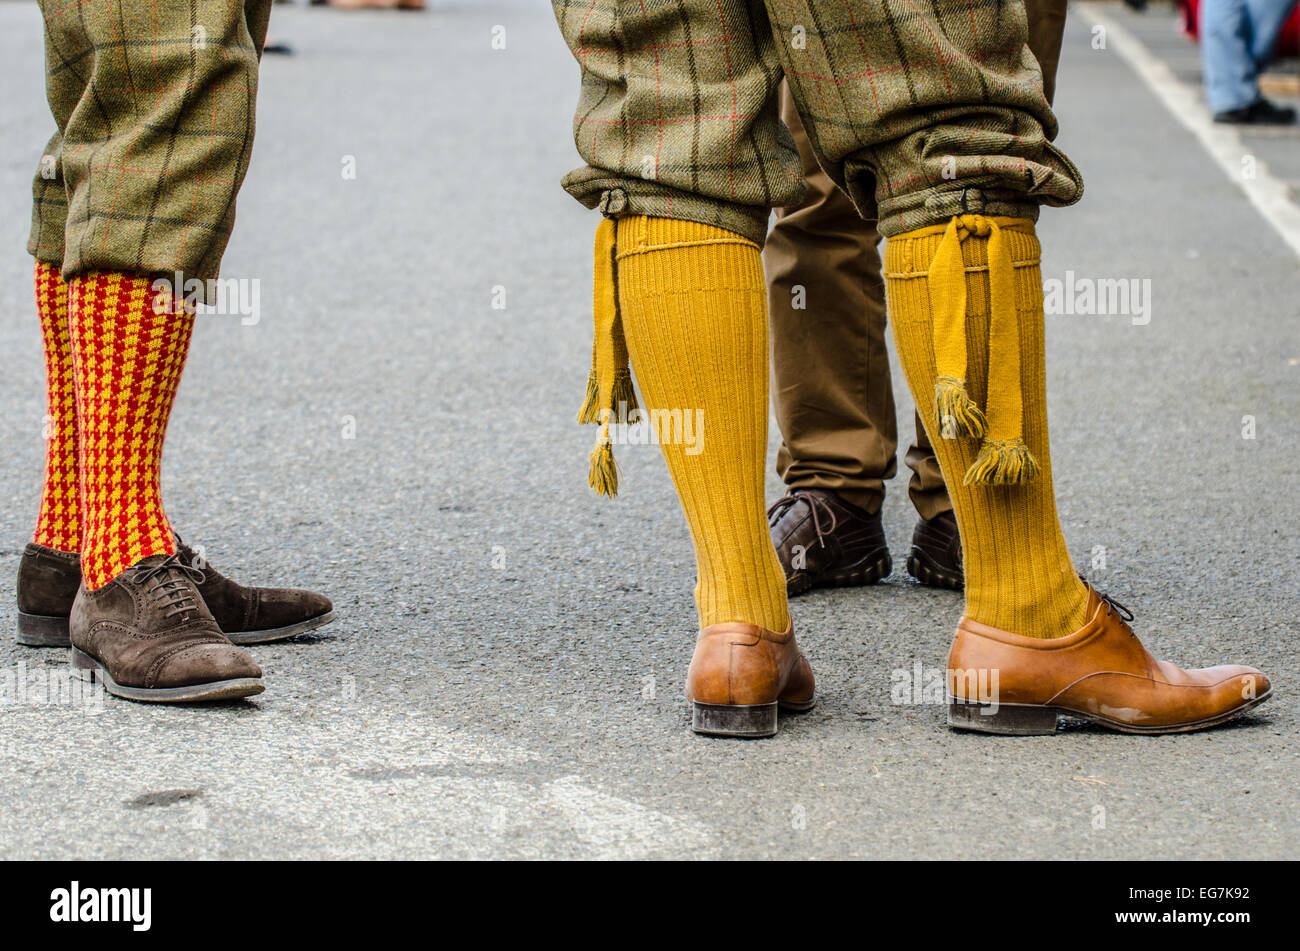 Plus-fours son calzones o pantalones que se extienden 10 cm (4 pulg.) por  debajo de la rodilla, con la rodilla calcetines altos. Vintage periodo  clásico atuendo Goodwood Revival Fotografía de stock - Alamy